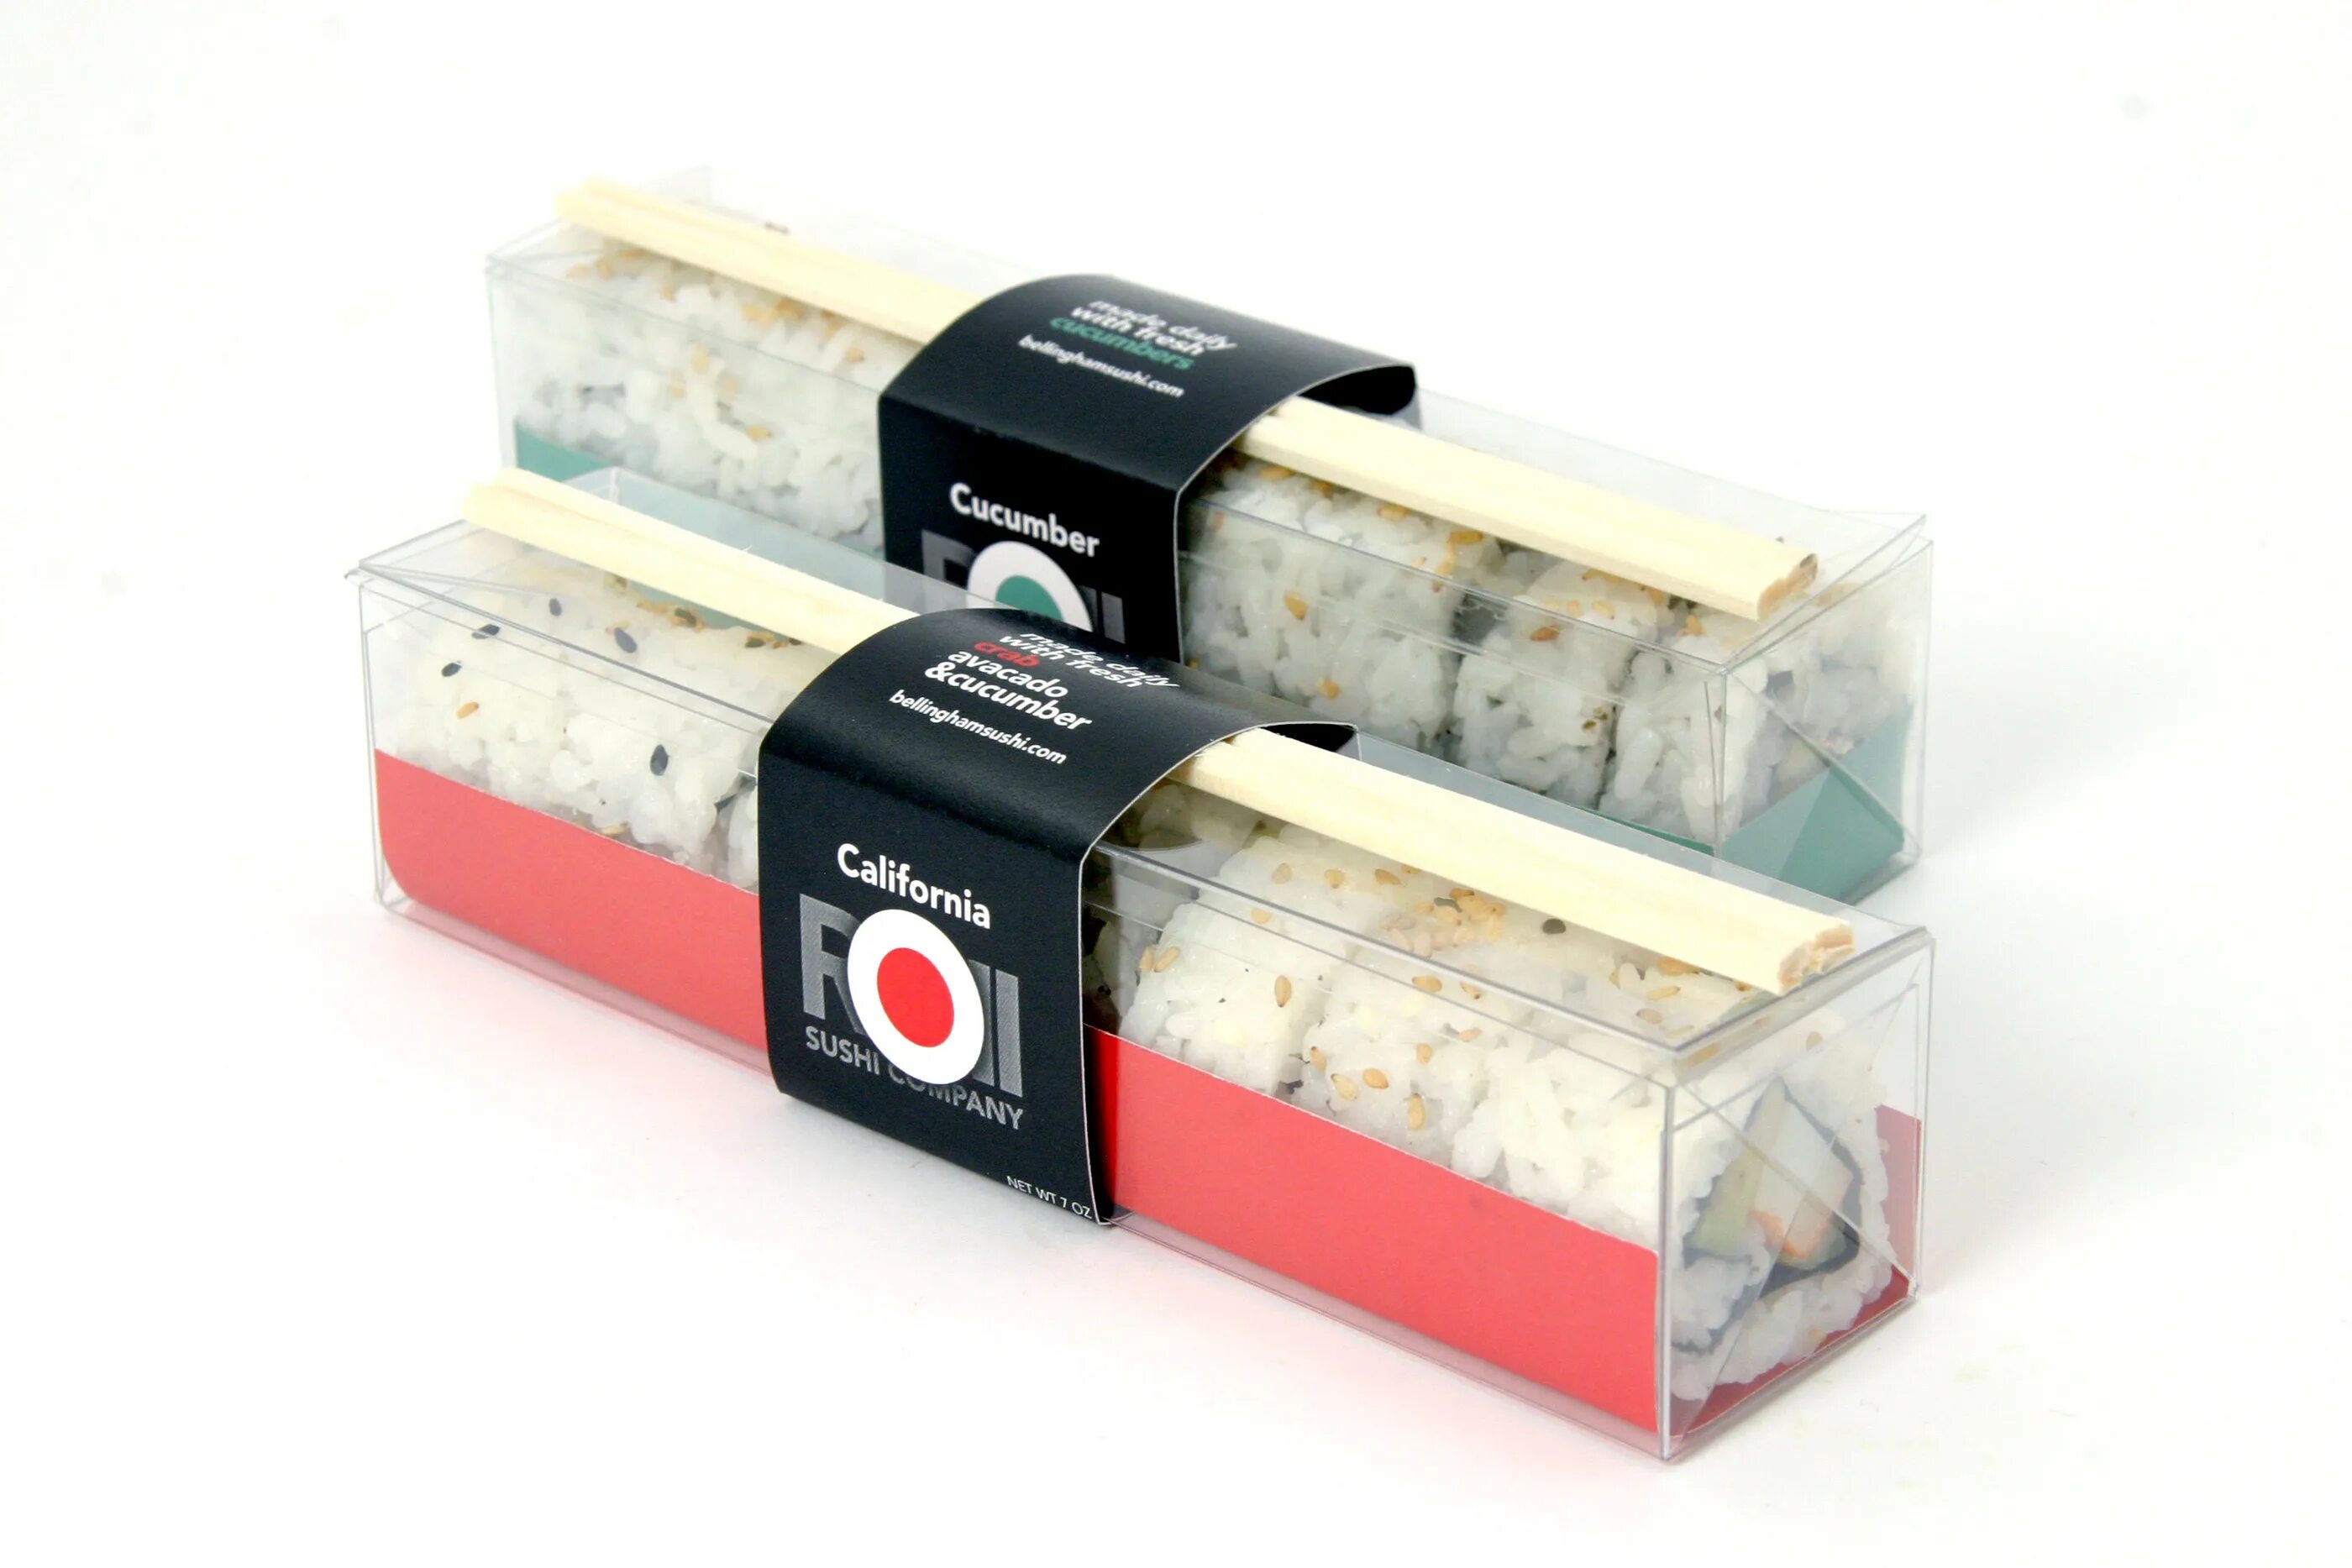 Rolling roll доставка. Роллы sushi Box. Упаковка для роллов. Роллы в коробочке. Упаковка для роллов и суши.